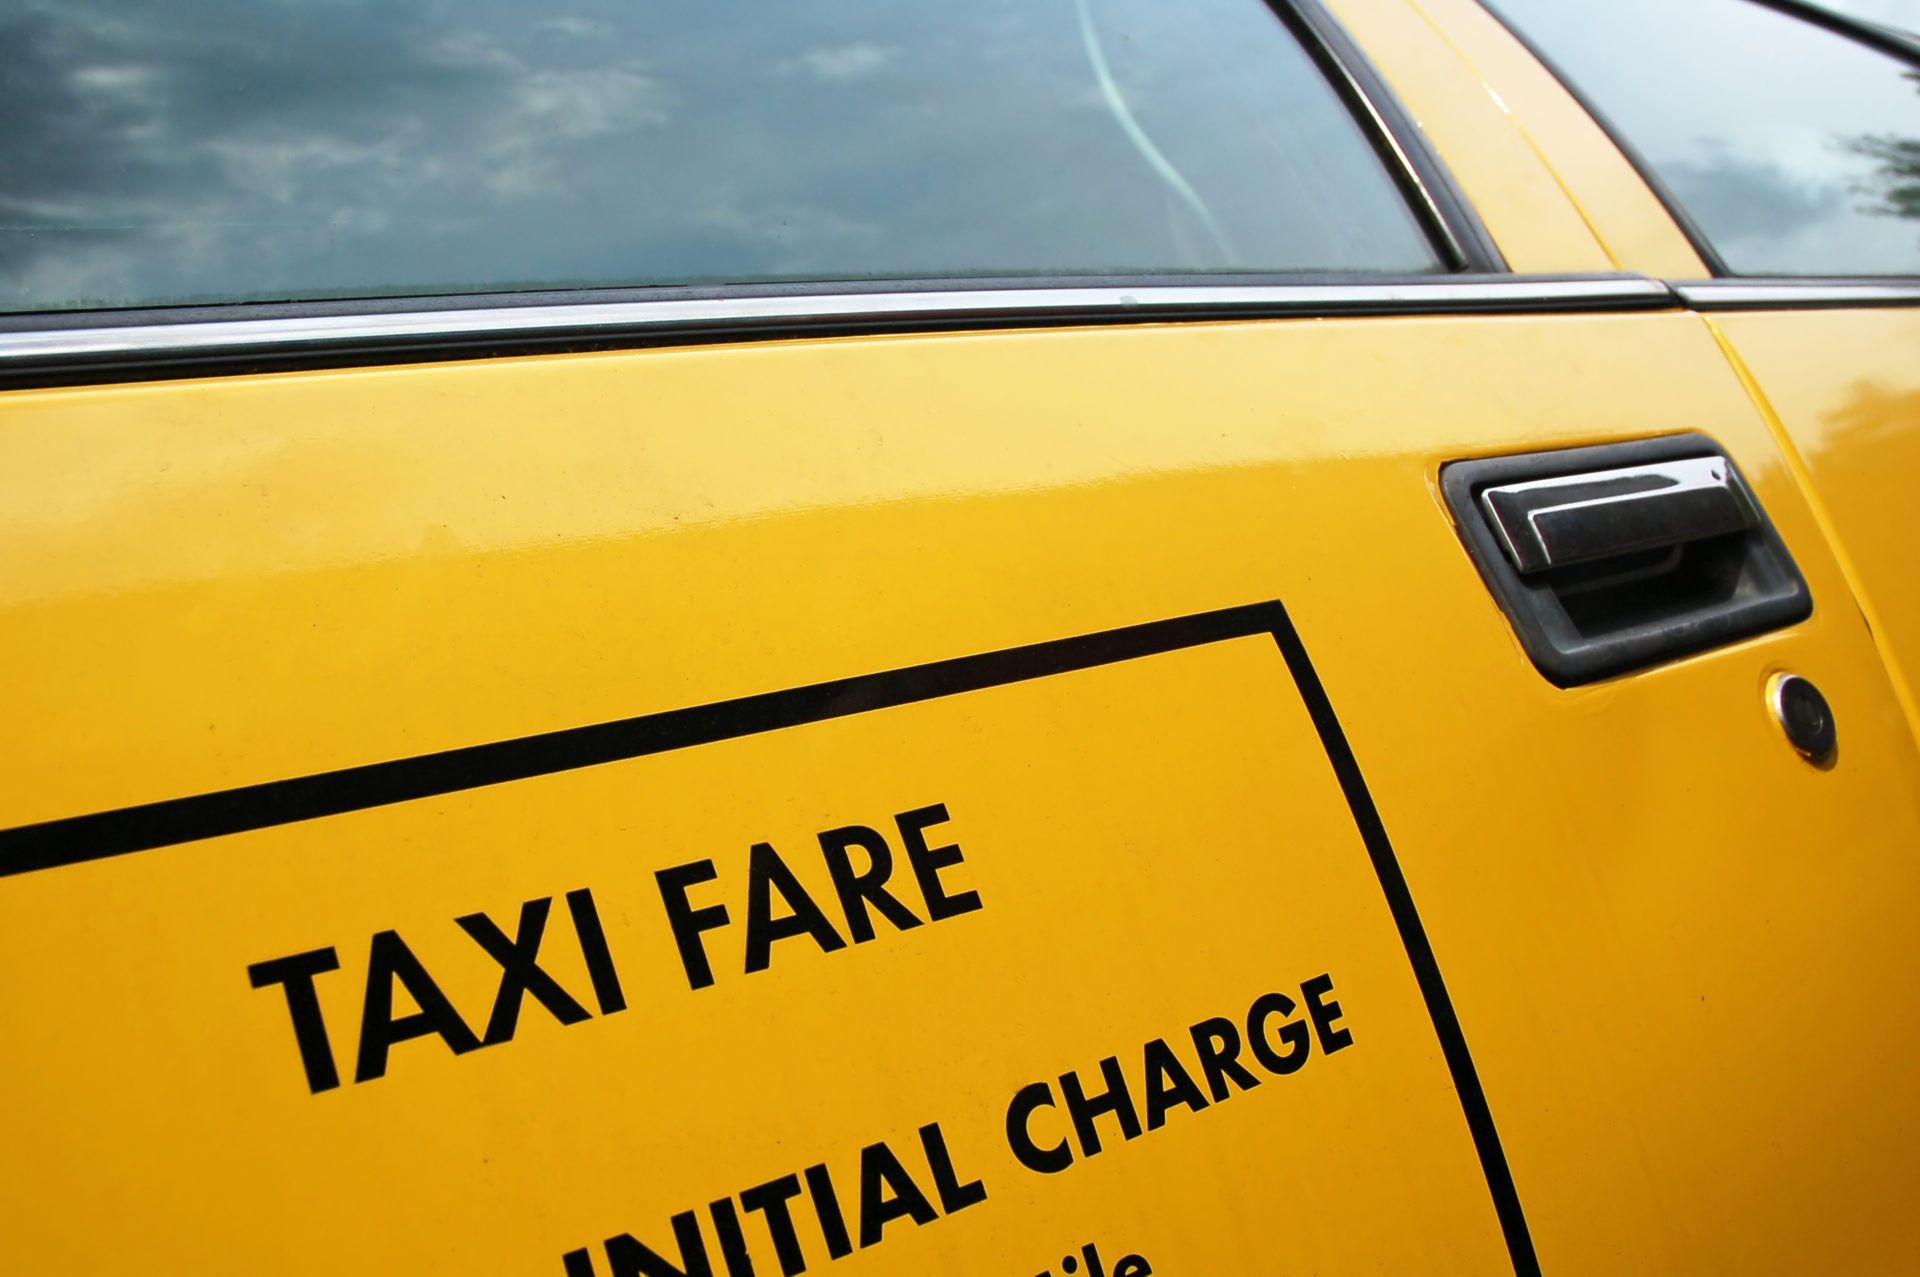 Натура за проезд. Такси в Праге. Такси хаки. Плата за проезд на такси рисунок. Желтый карта на такси Прага.